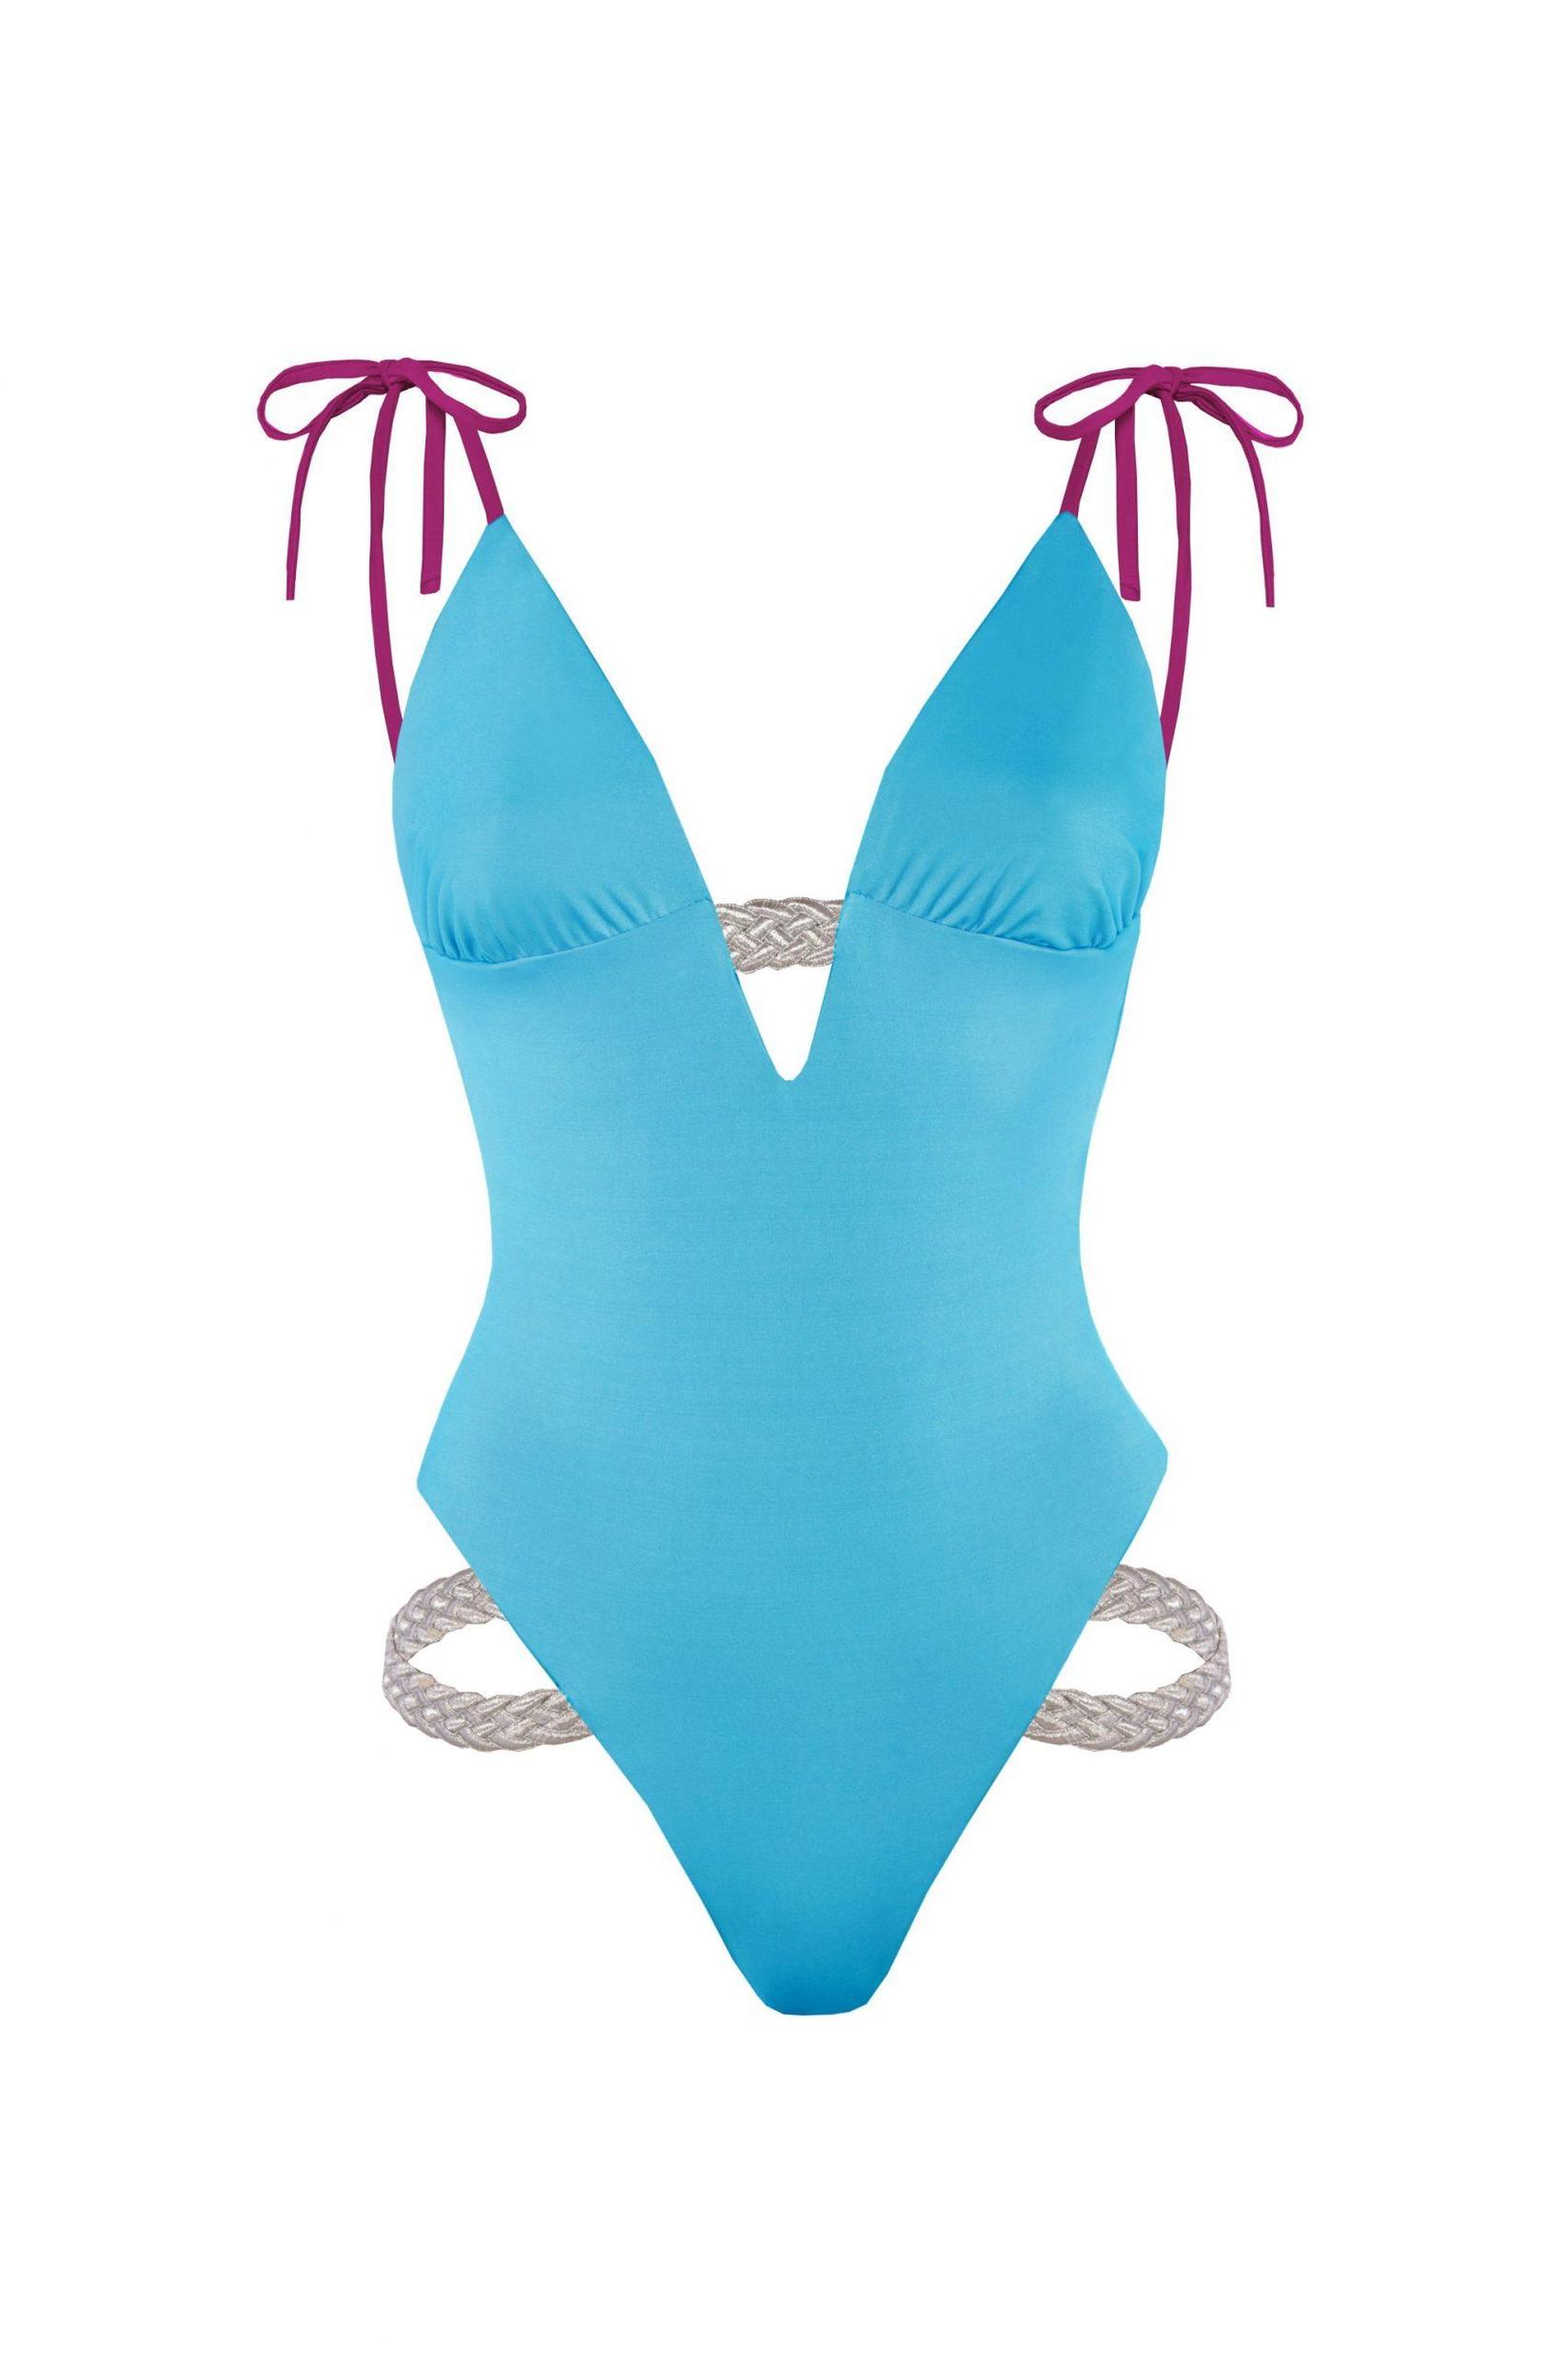 Selected image for DEVI COLLECTION Ženski jednodelni kupaći kostim Asya akvamarin